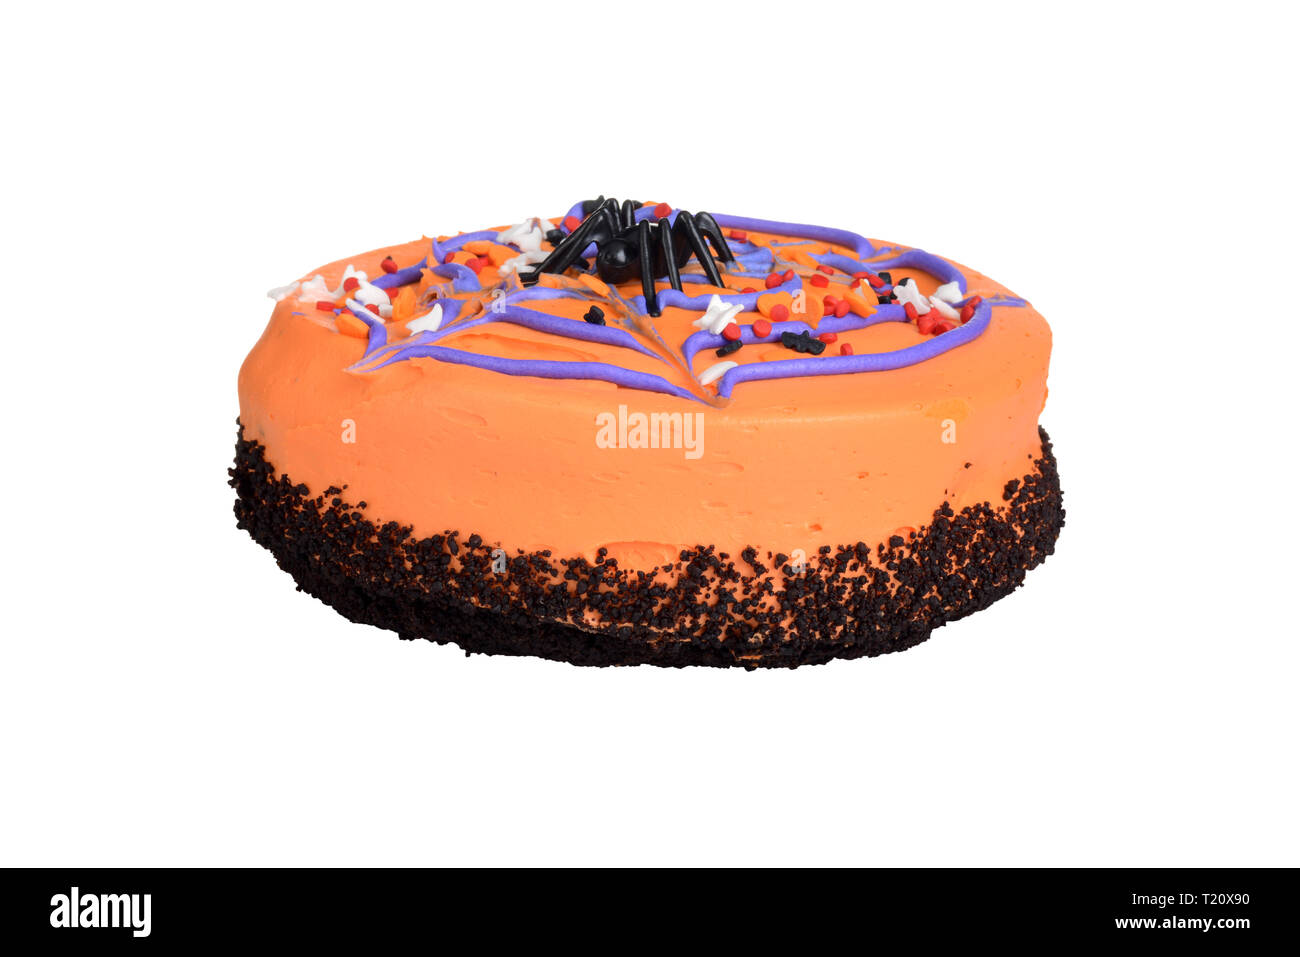 Isolierte Halloween Kuchen mit Spinne auf der Oberseite Stockfoto